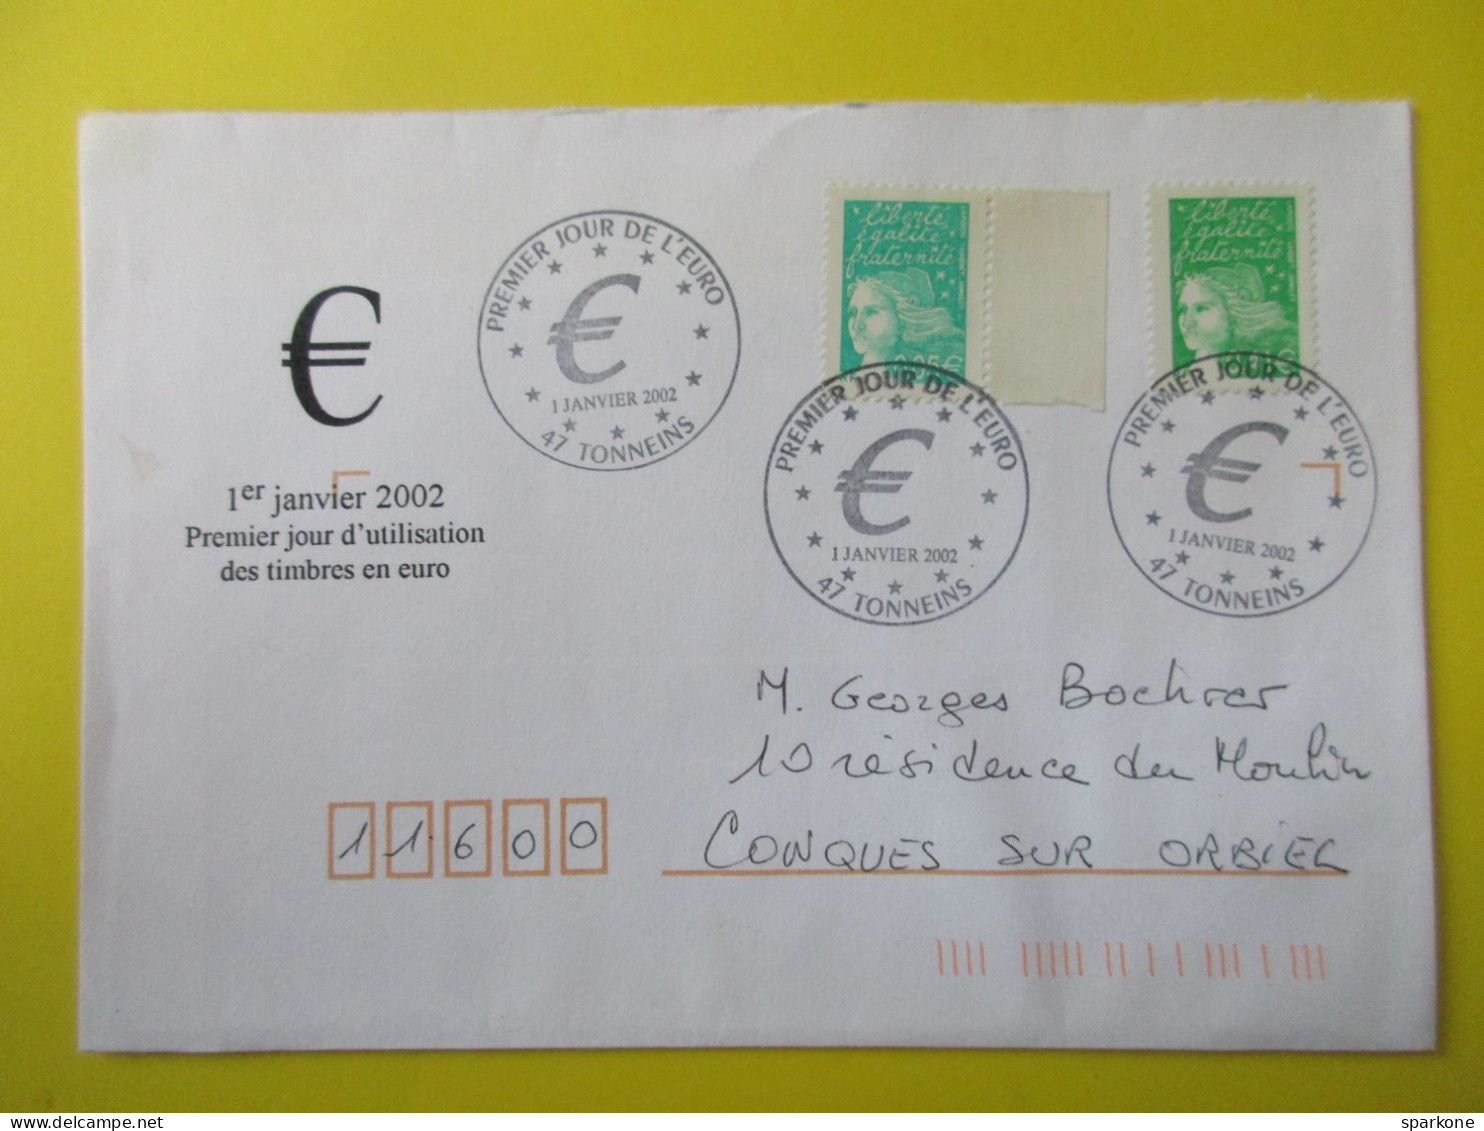 Marcophilie - Enveloppe - France - Cachet Commémoratif - Timbres Poste En €uros - 01 Janvier 2002 - Gedenkstempel